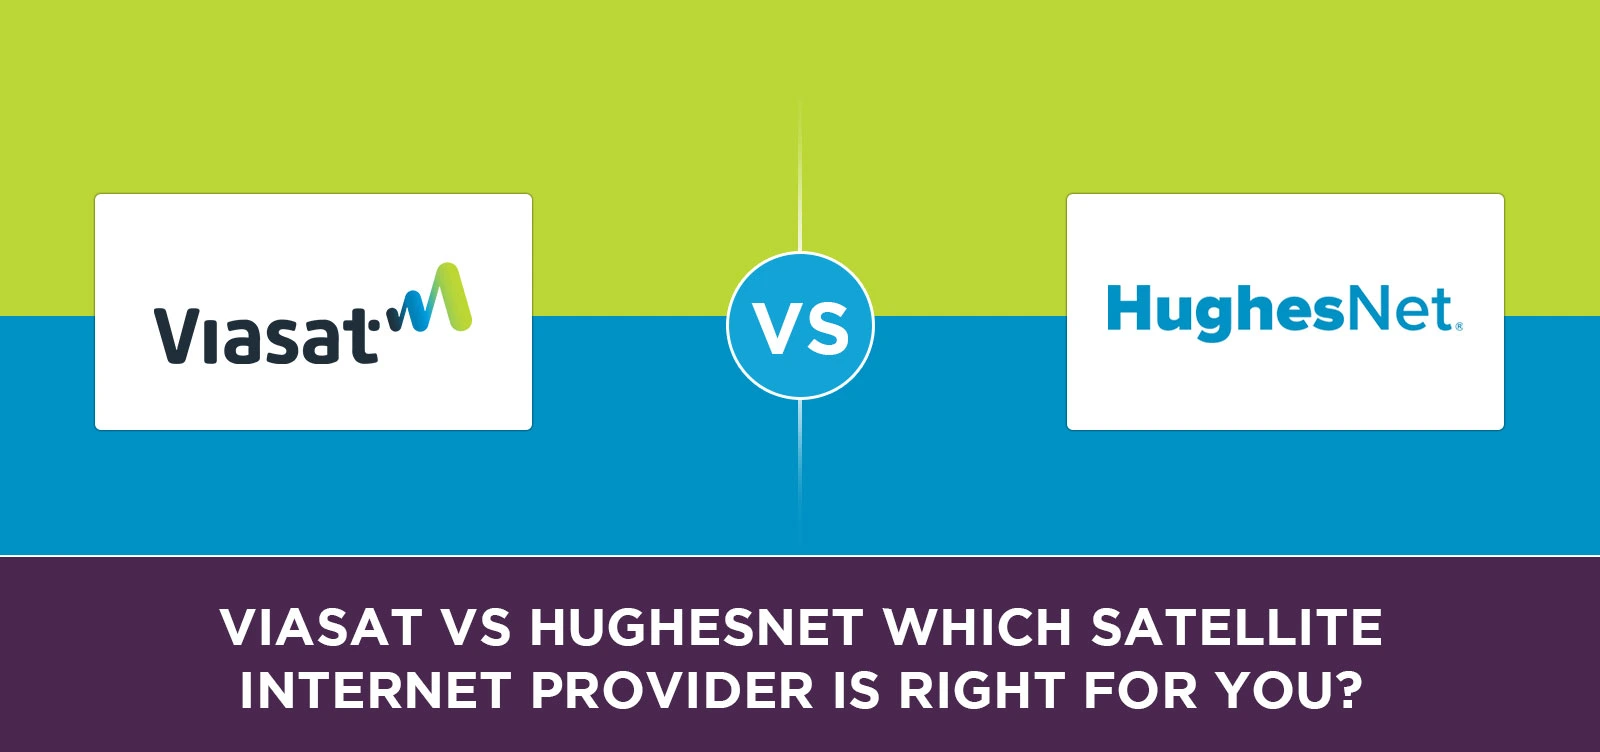 Viasat vs HughesNet Which Satellite Internet Provider is Right for You?